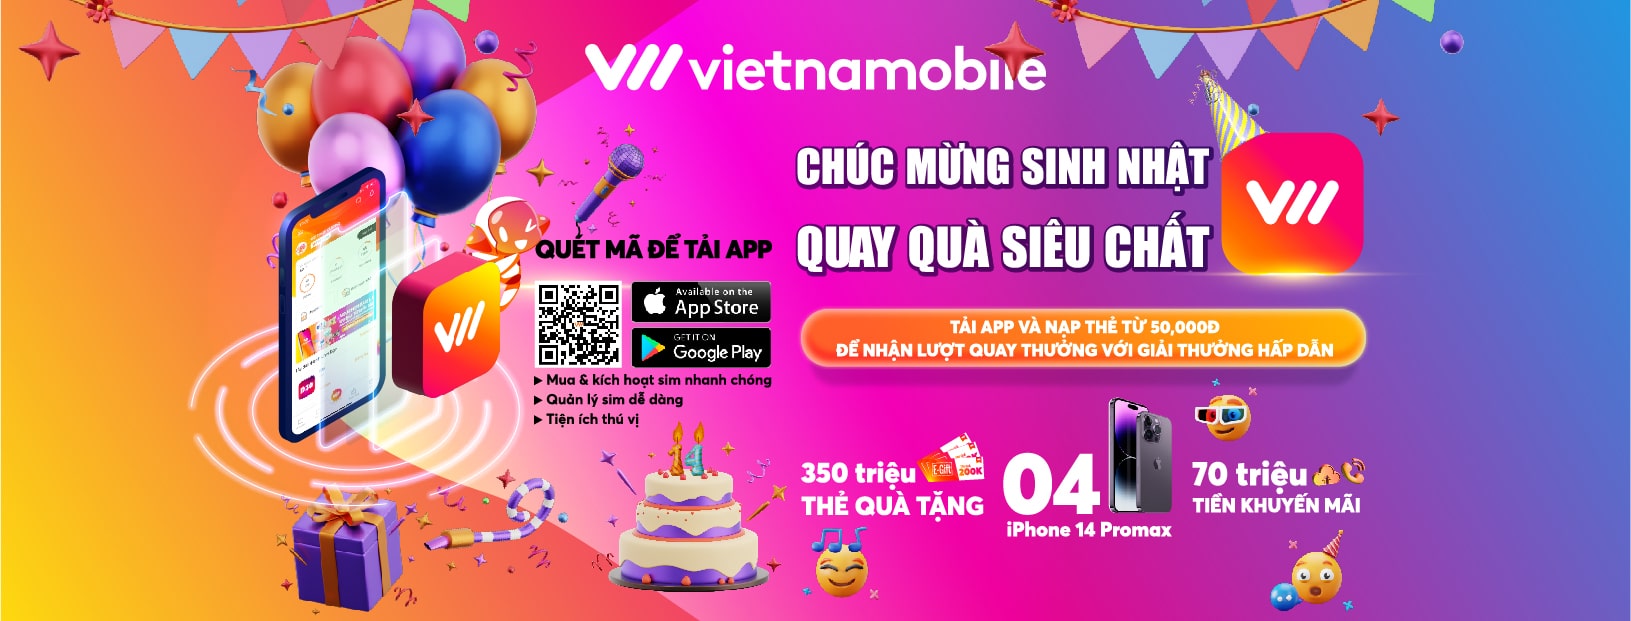 Vietnam Mobile Là Với Phần Quà Lên Tới 200% Giá Trị Thẻ Nạp Đầu Tiên Trong Ngày Vào Tài Khoản Thoại Liên Mạng Mạng Di Động Được “khai Sinh”, Chính Thức Cung Cấp Dịch Vụ Viễn Thông Vào Năm 2009, Vẫn Đang Trong Thời Kì Phát Triển Tại Việt Nam